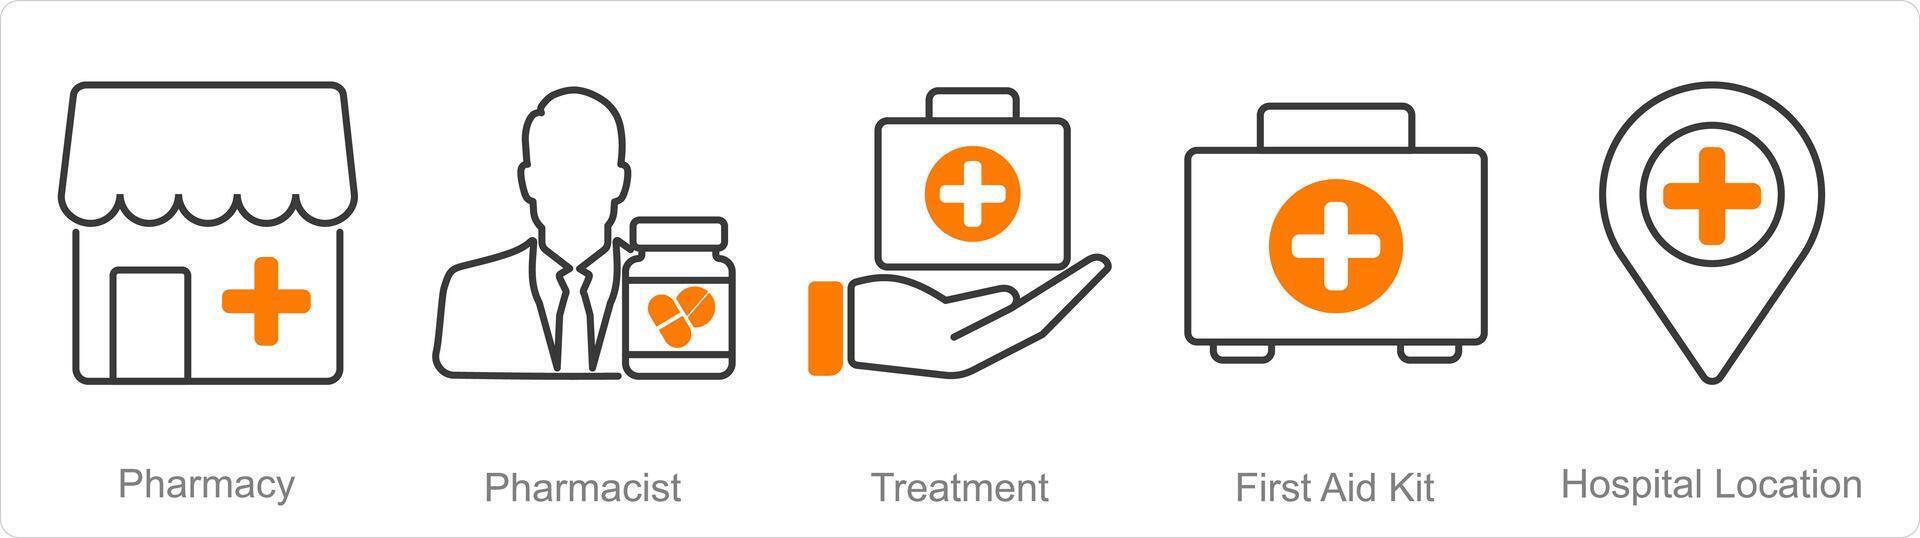 uma conjunto do 5 farmacia ícones Como farmacia, farmacêutico, tratamento vetor